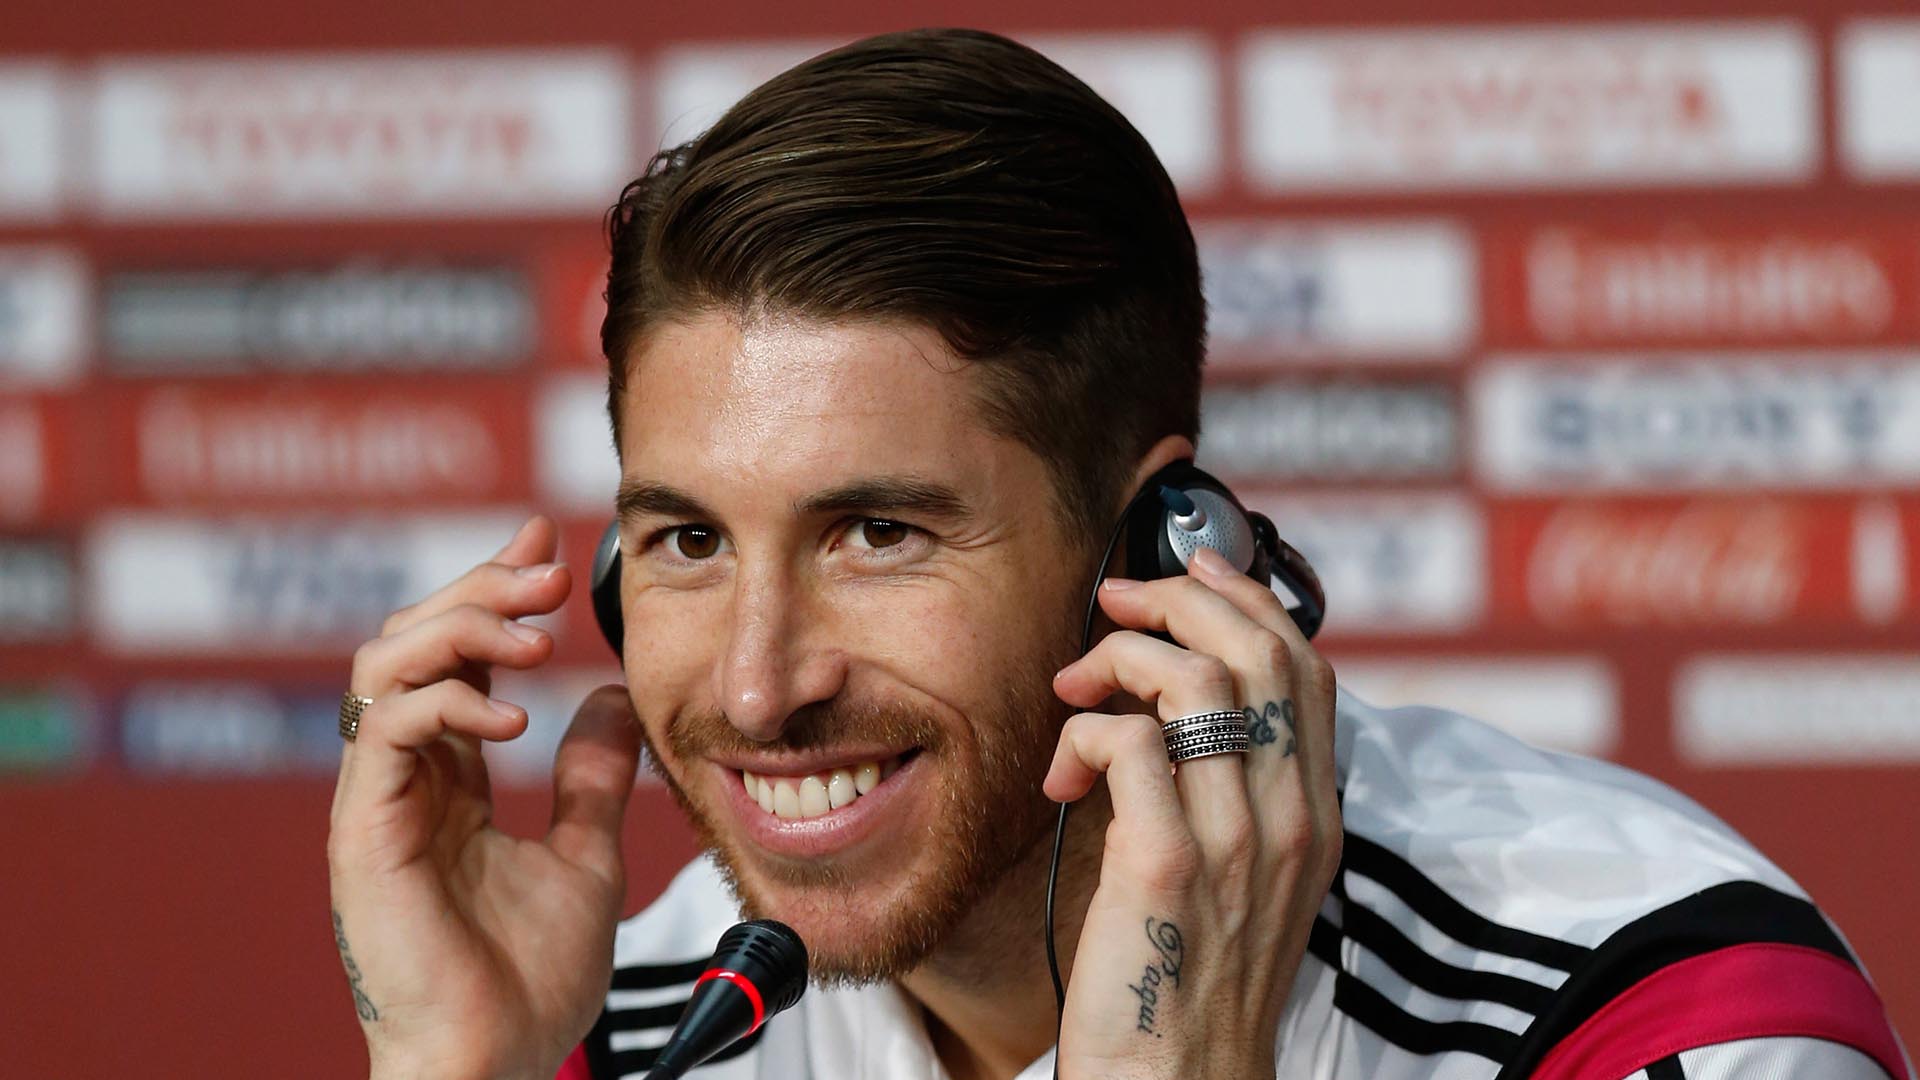 El defensor español, a lo largo de su paso por el Real Madrid, ha mostrado una gran cantidad de cortes de cabello